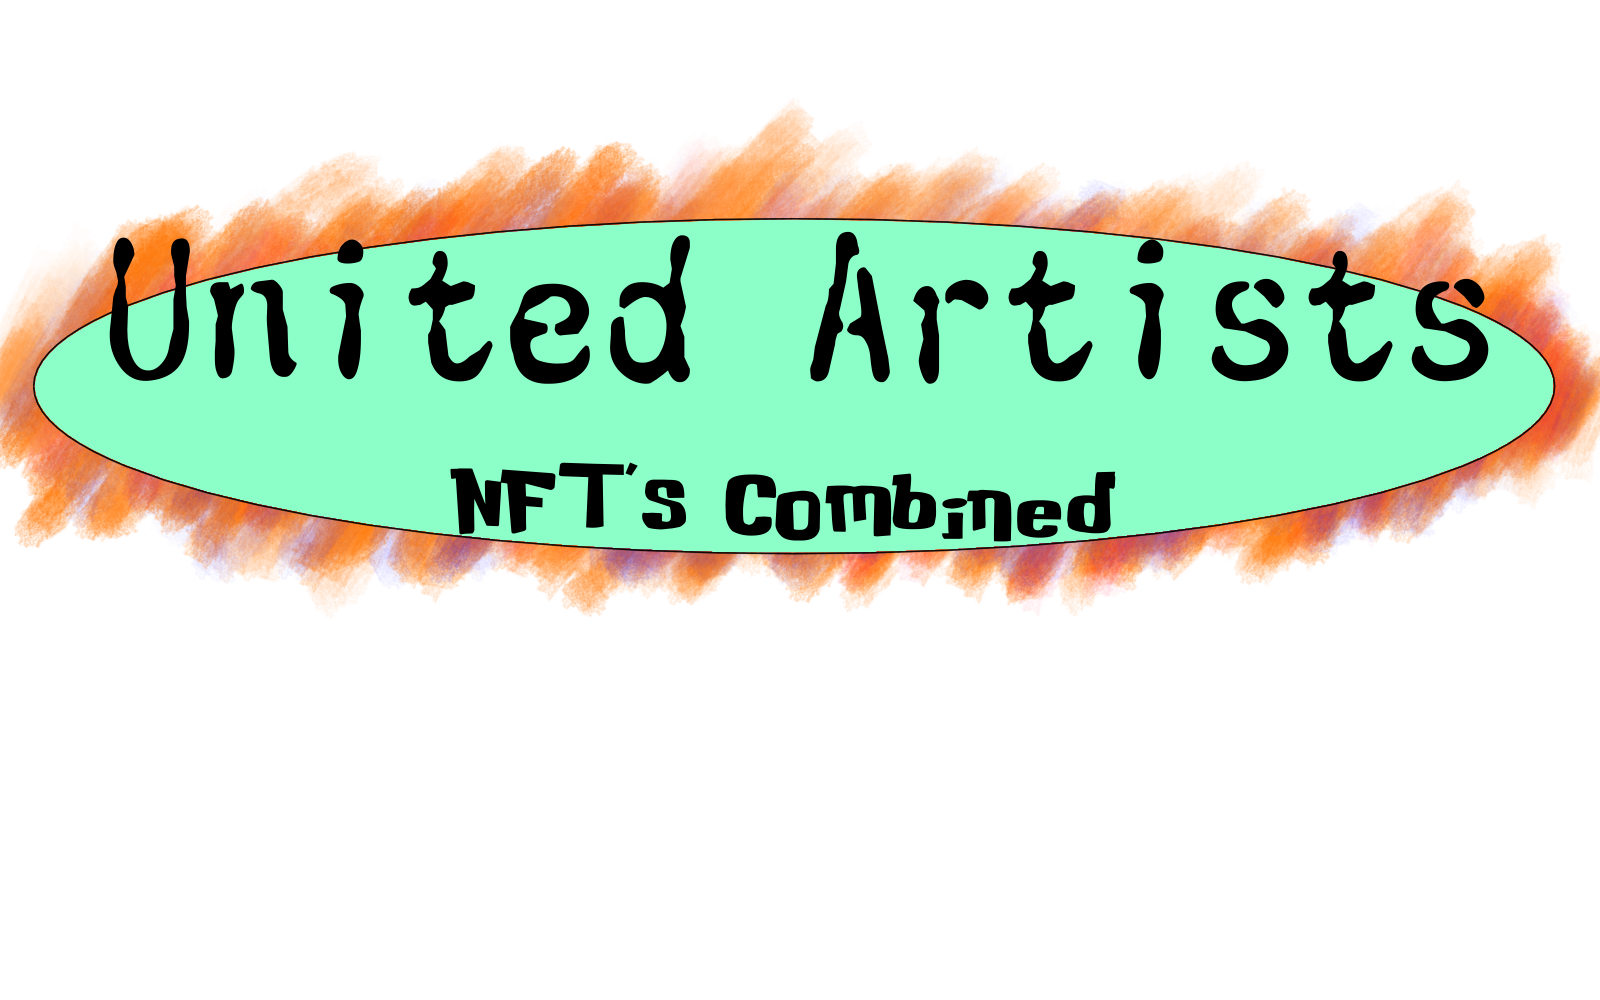 United Artists NFT